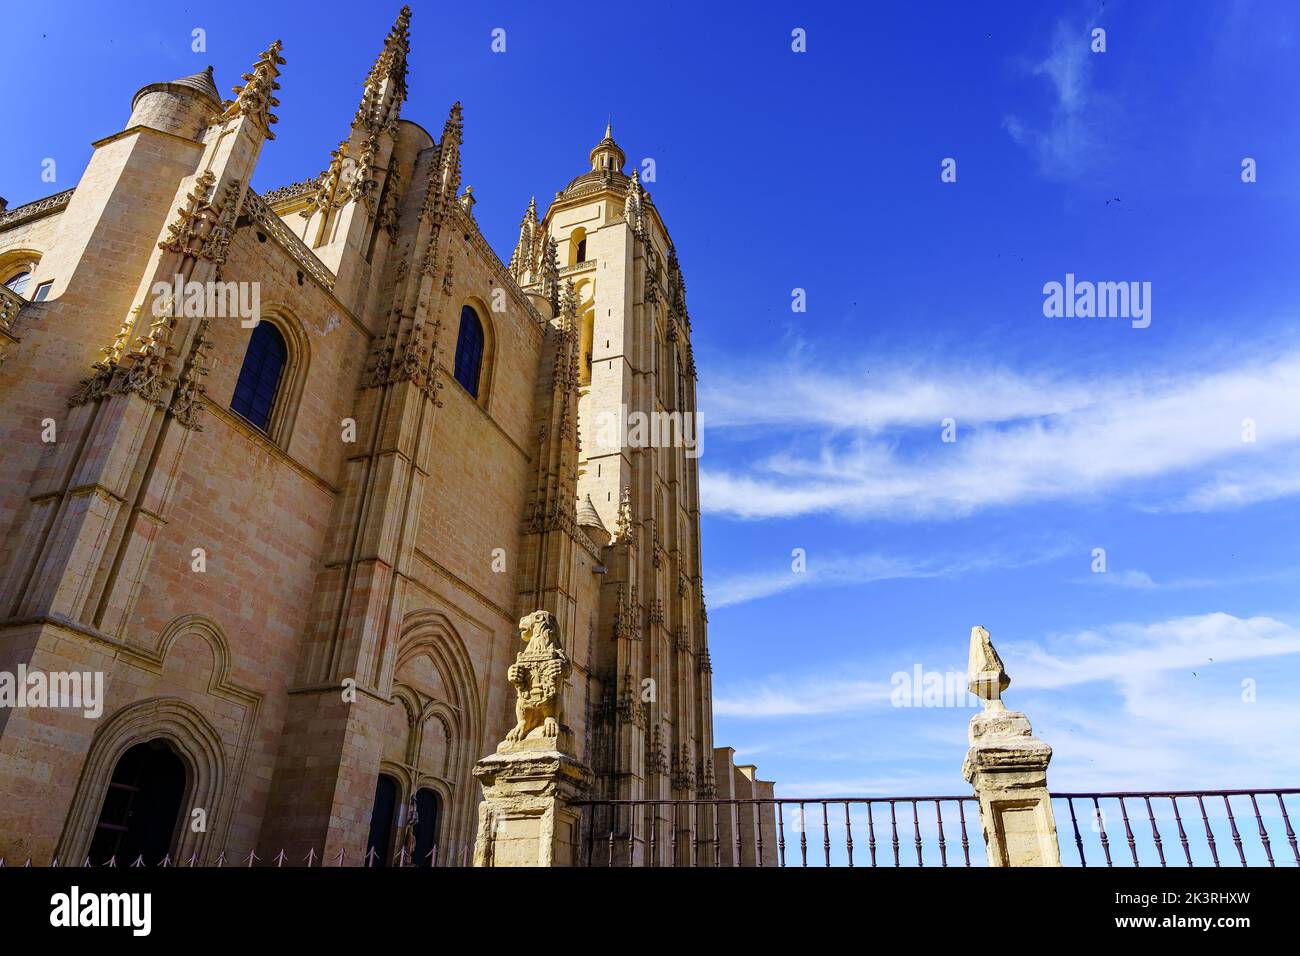 La hermosa catedral histórica en el casco antiguo de Segovia, España Foto de stock